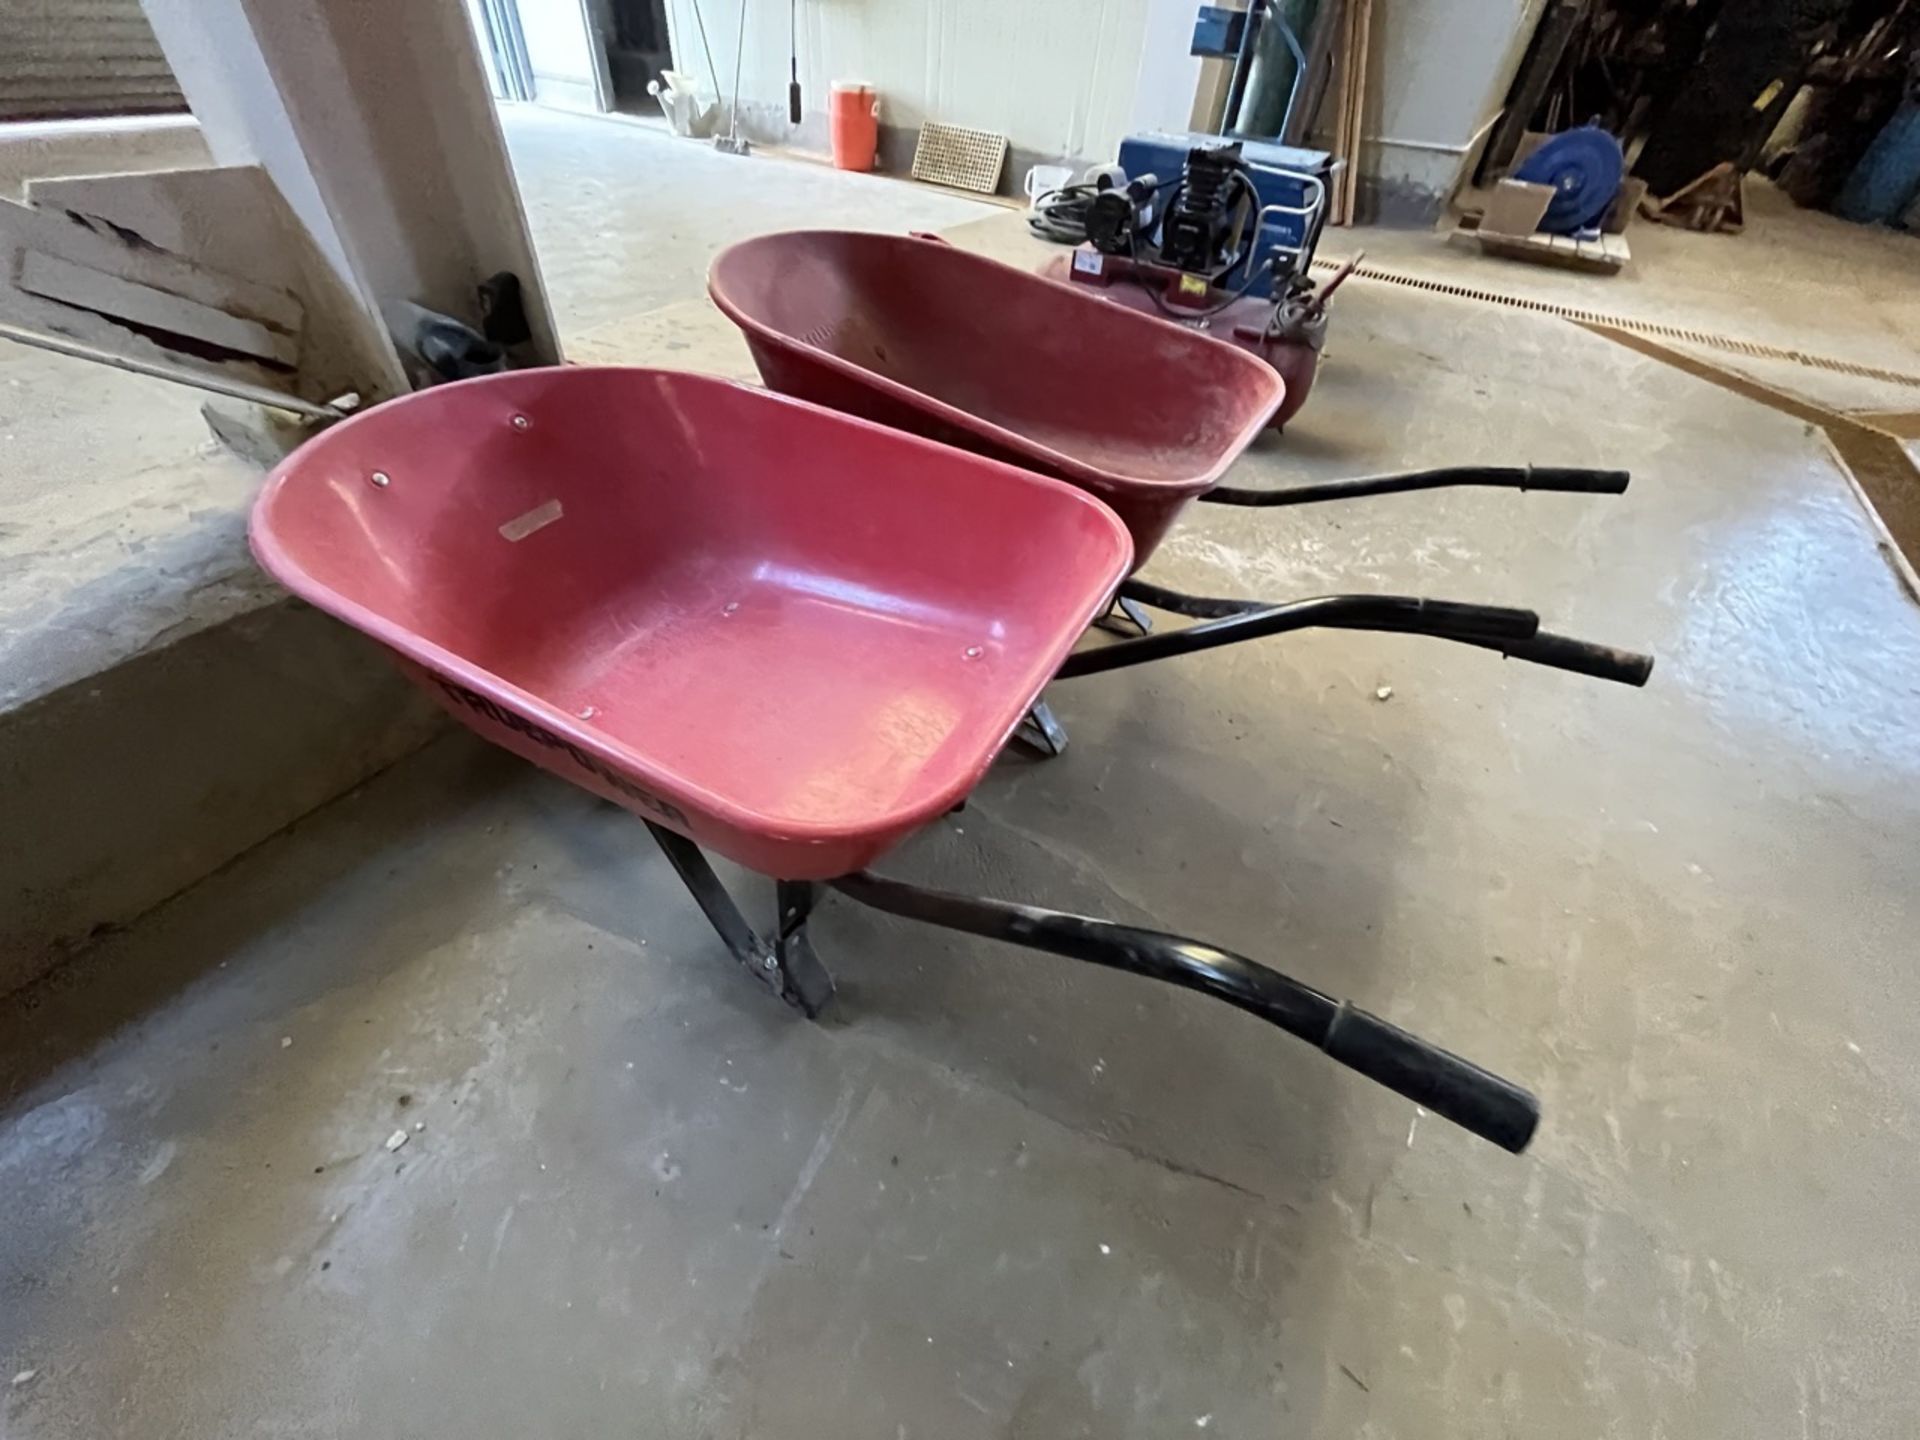 Lot of 2 red Truper wheelbarrows / Lote de 2 carretillas de carga marca Truper en color rojo. - Image 5 of 7